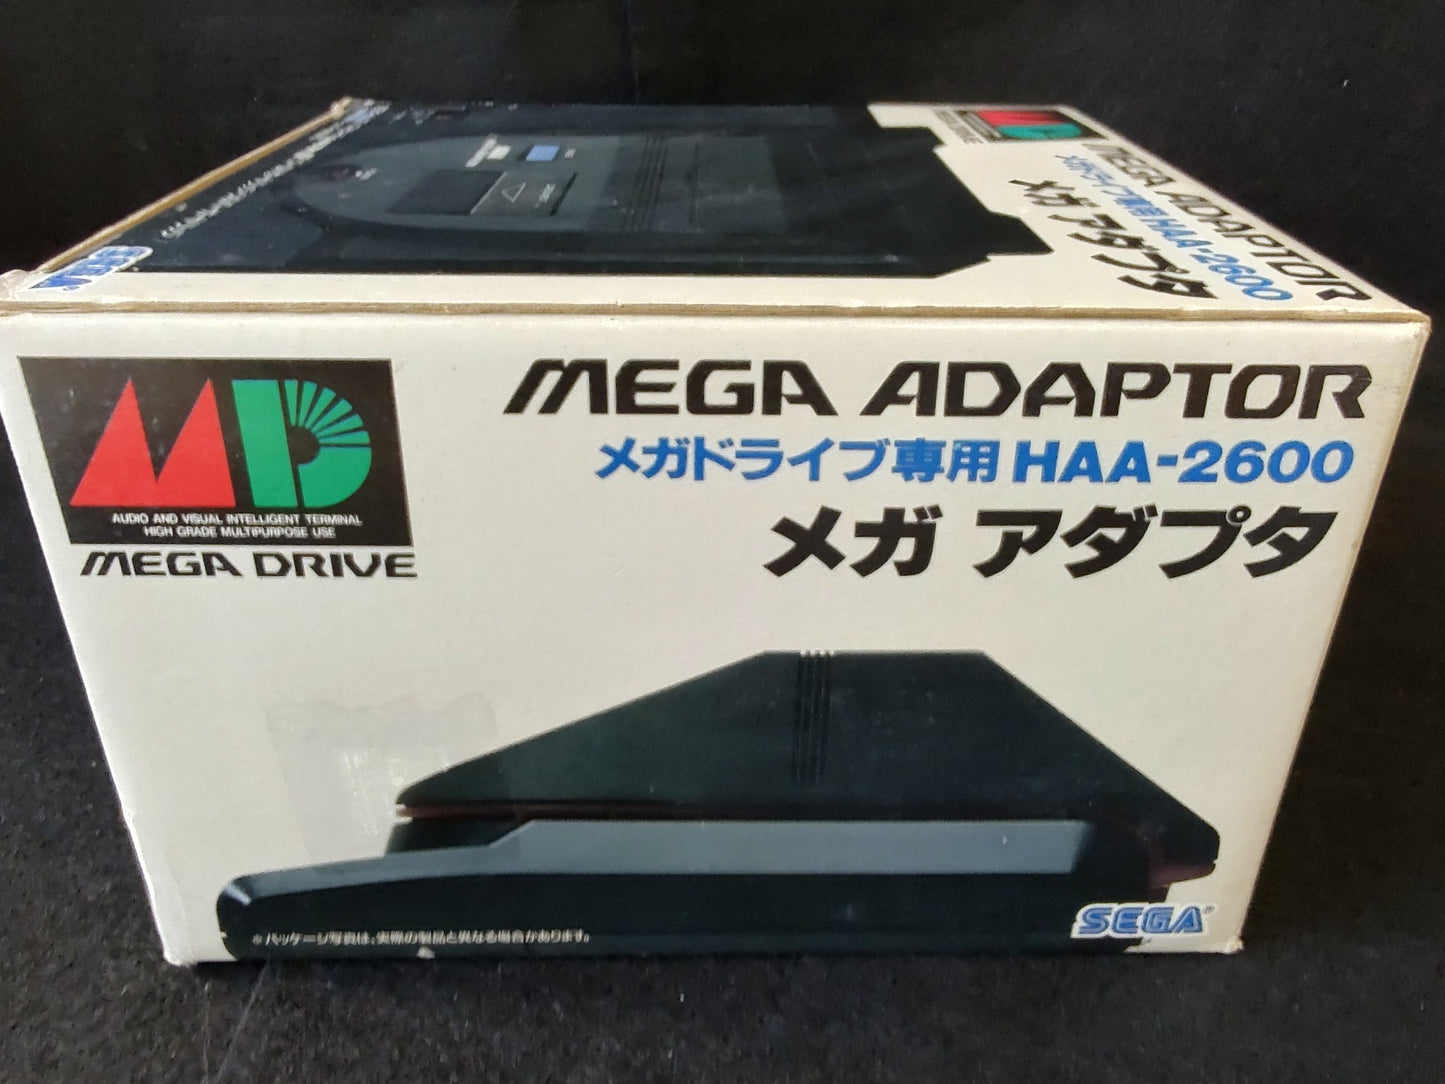 SEGA Mega Adapter System JP Ver. (POWER BASE CONVERTER) Boxed , Working-e0905-